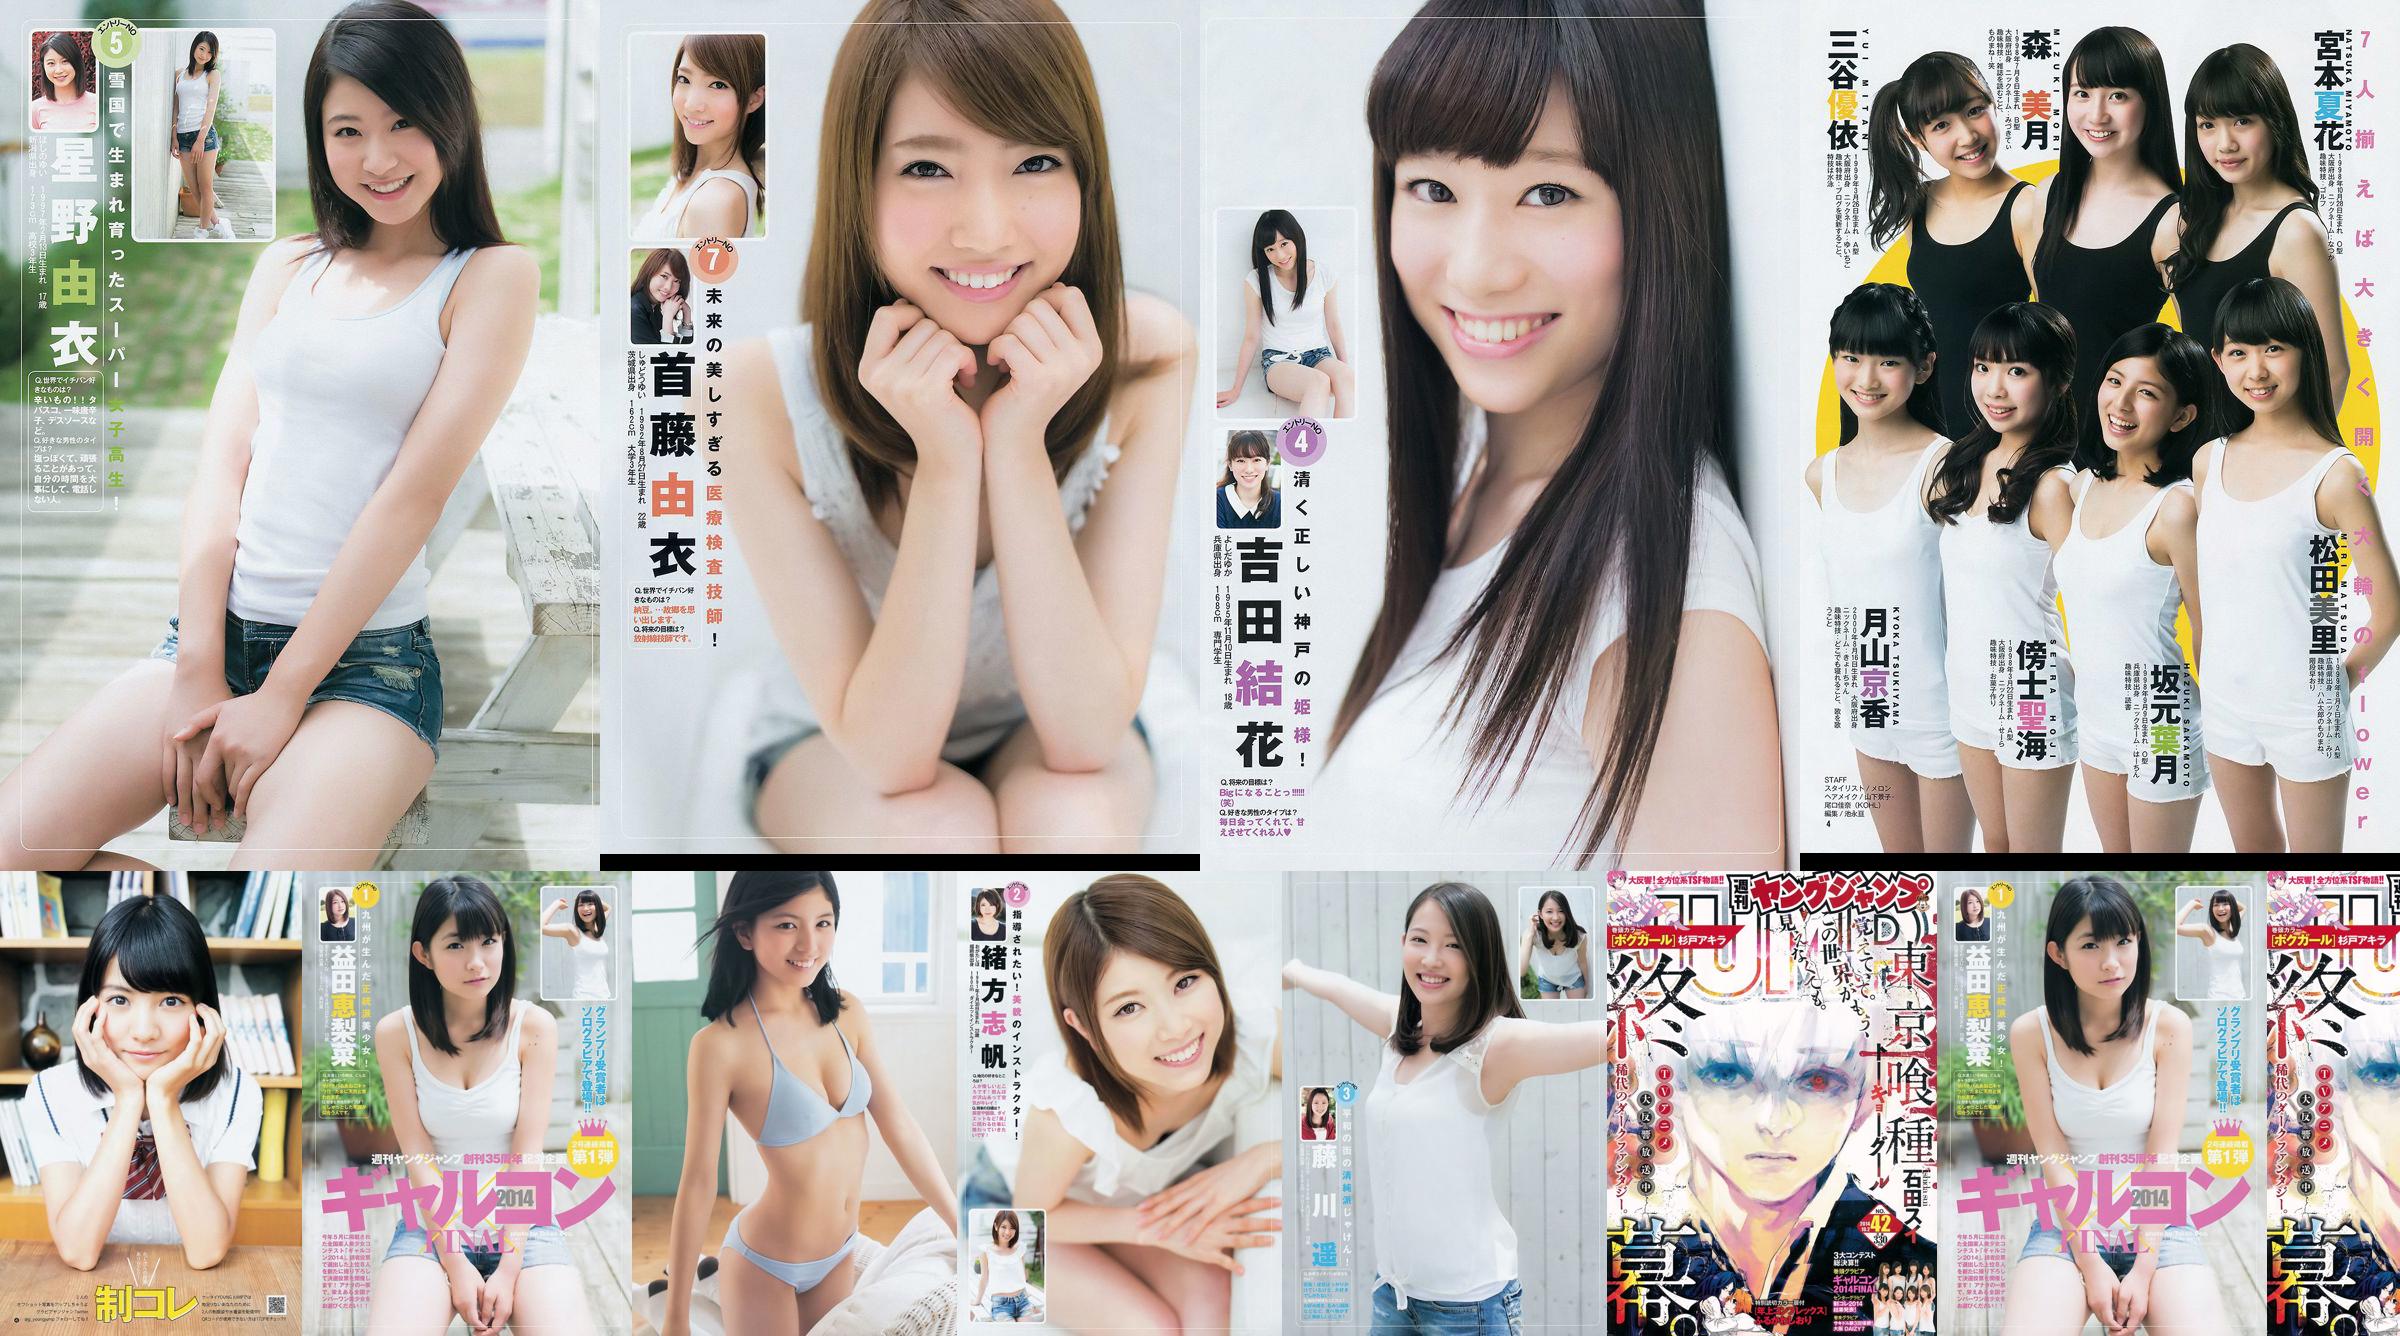 갸루콘 2014 제 이거 궁극 2014 오사카 DAIZY7 [Weekly Young Jump] 2014 년 No.42 사진 杂志 No.49169c 페이지 4